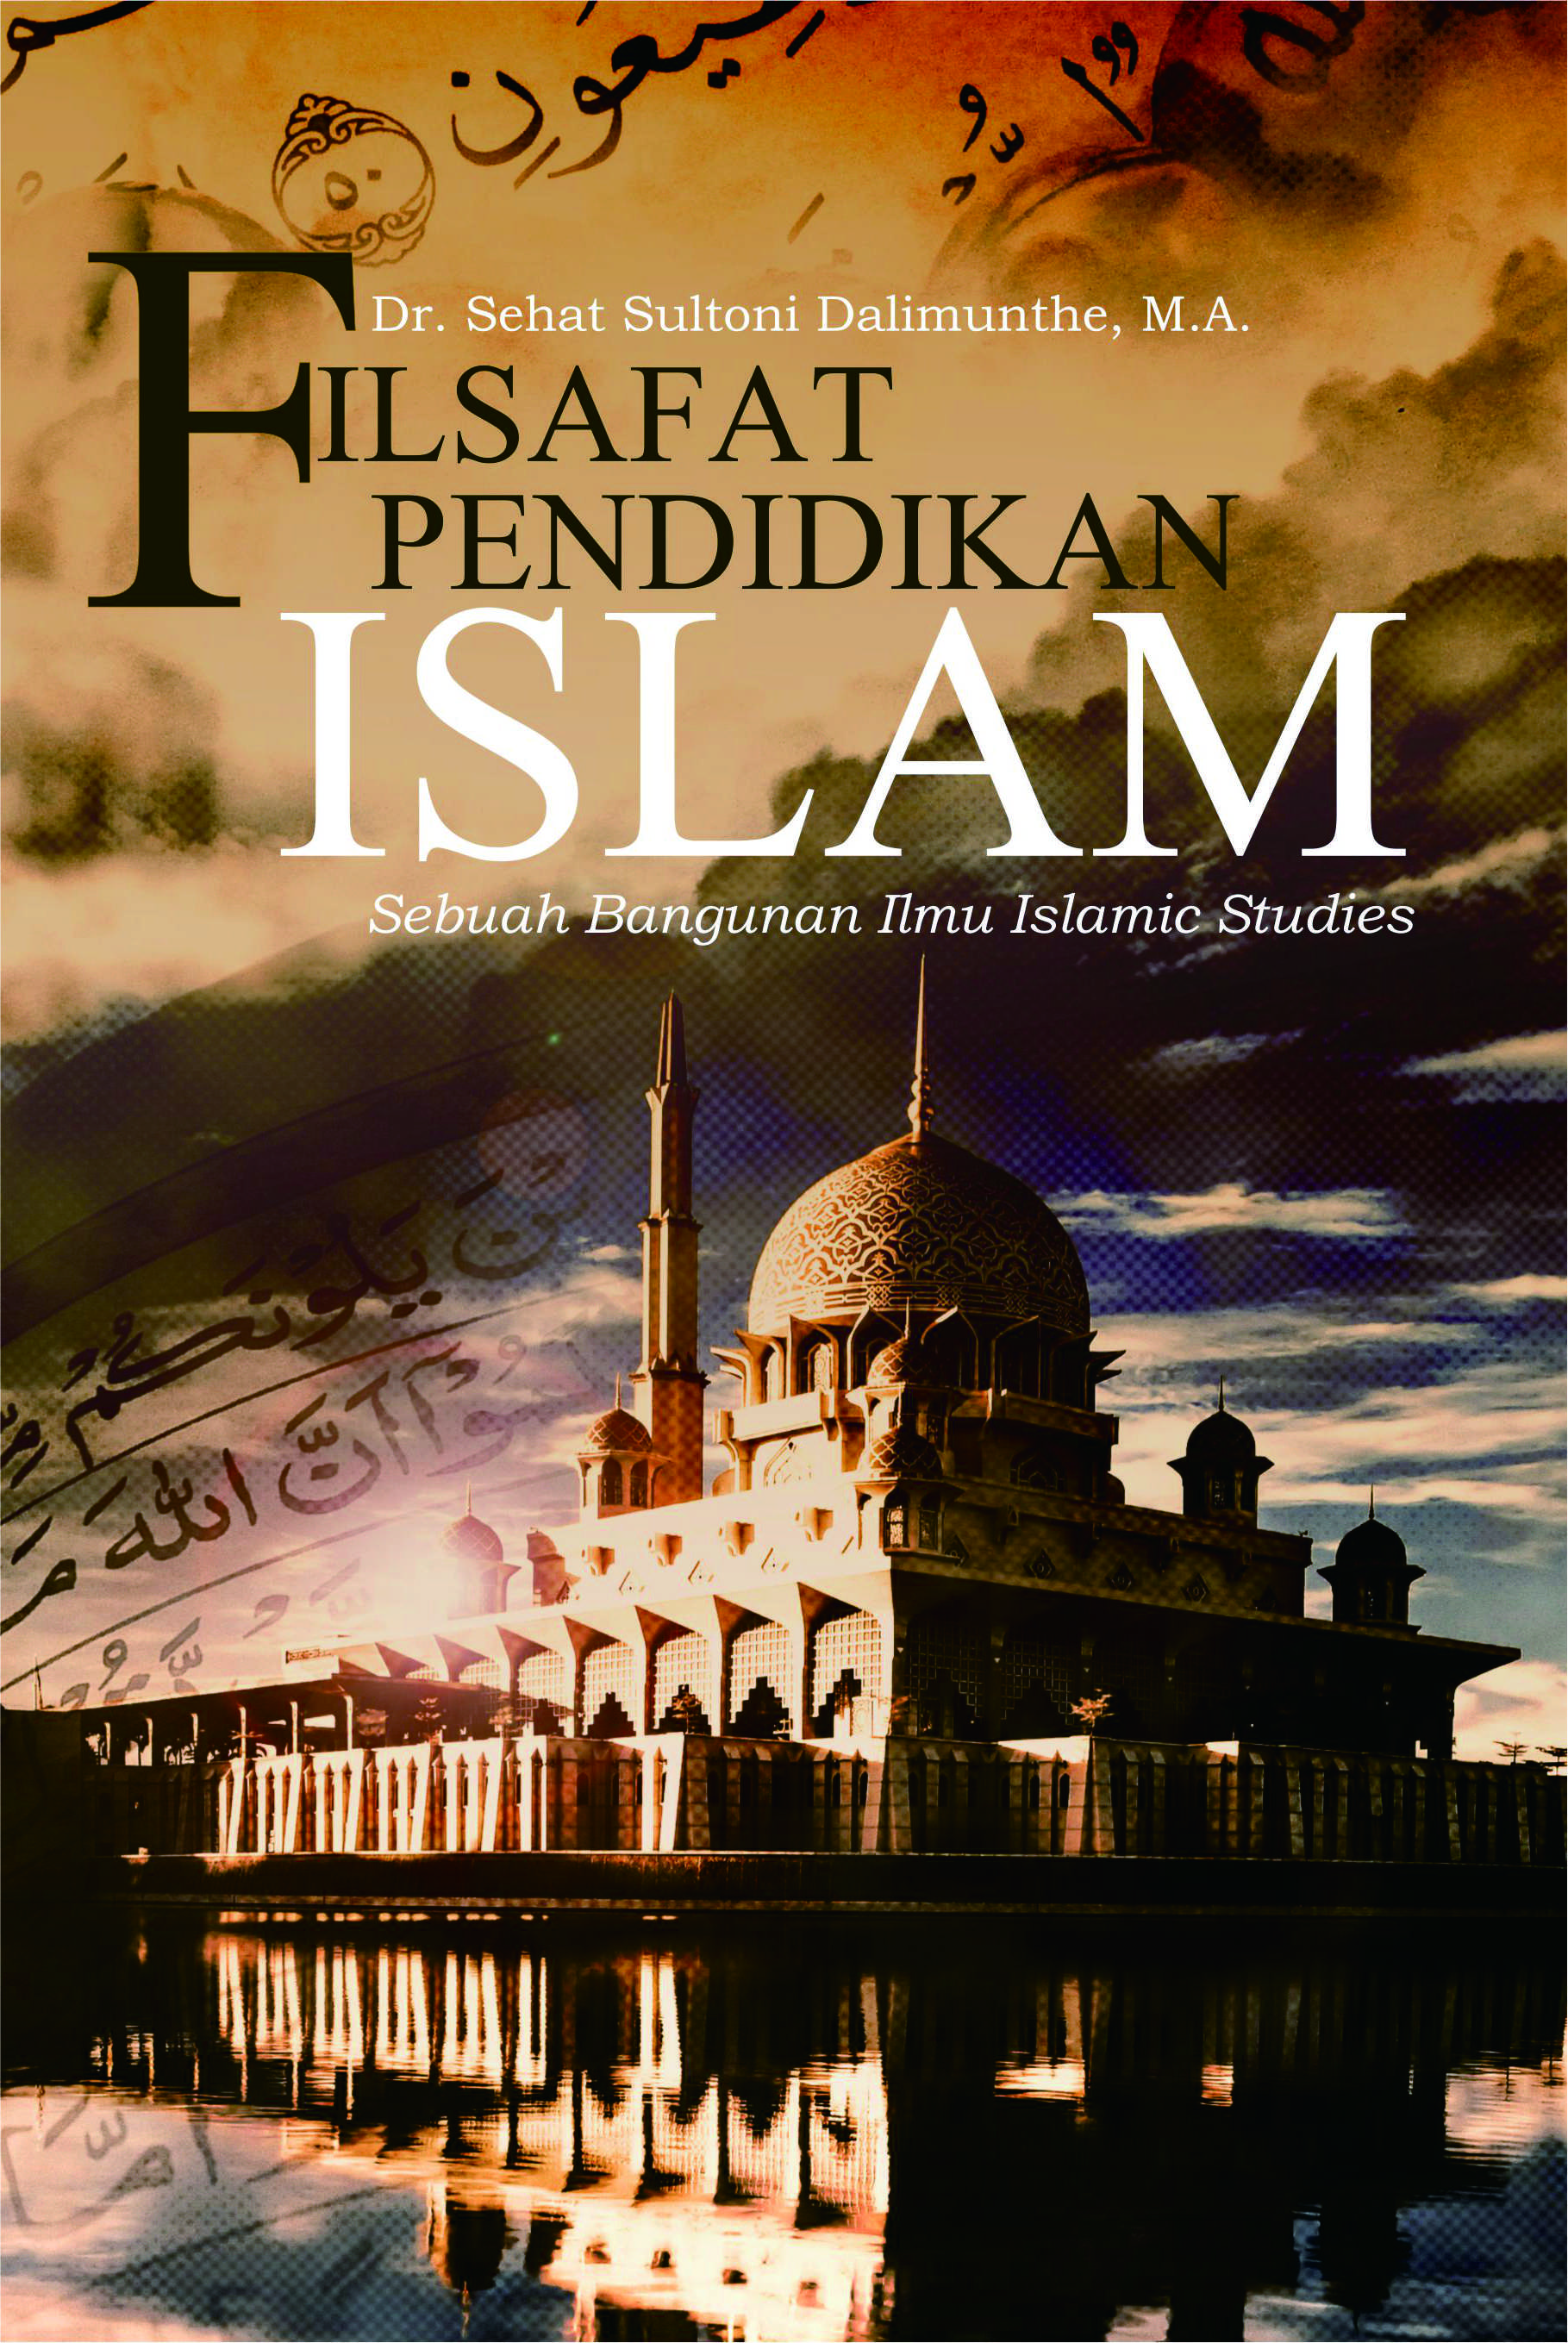 Buku Filsafat Pendidikan Islam Sebuah Bangunan Ilmu Islamic Studies - Penerbit Buku Deepublish